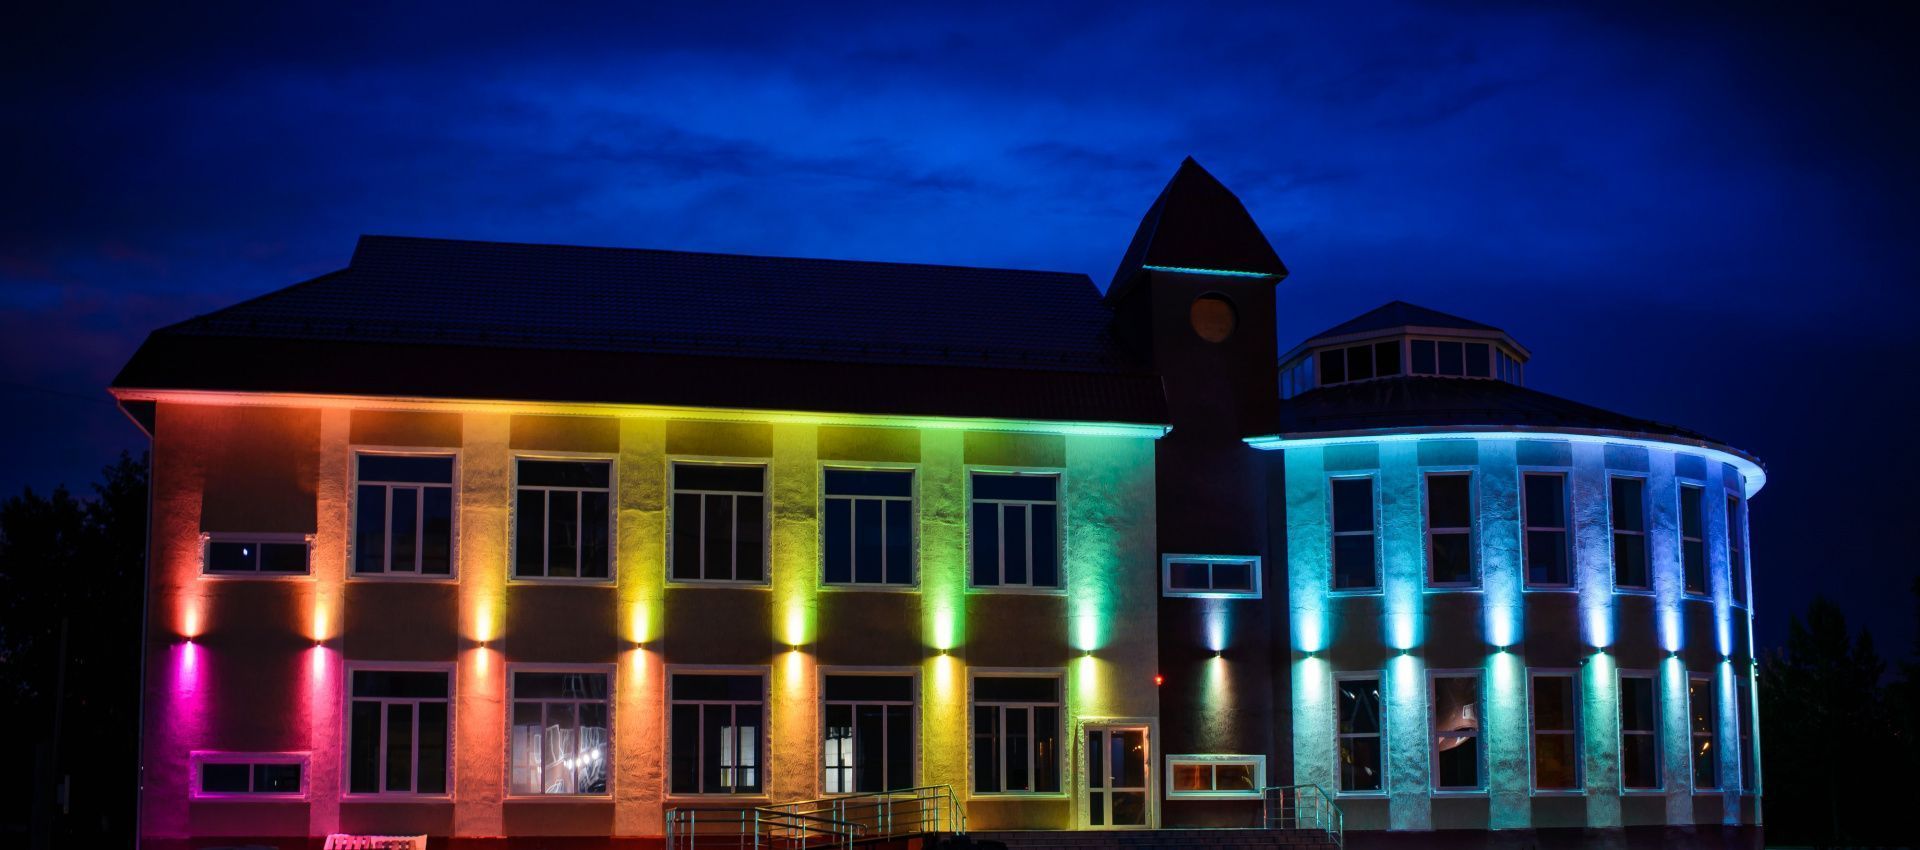 Торговый центр «АРЕНА» - освещение торгового центра, Шарыпово, 2021